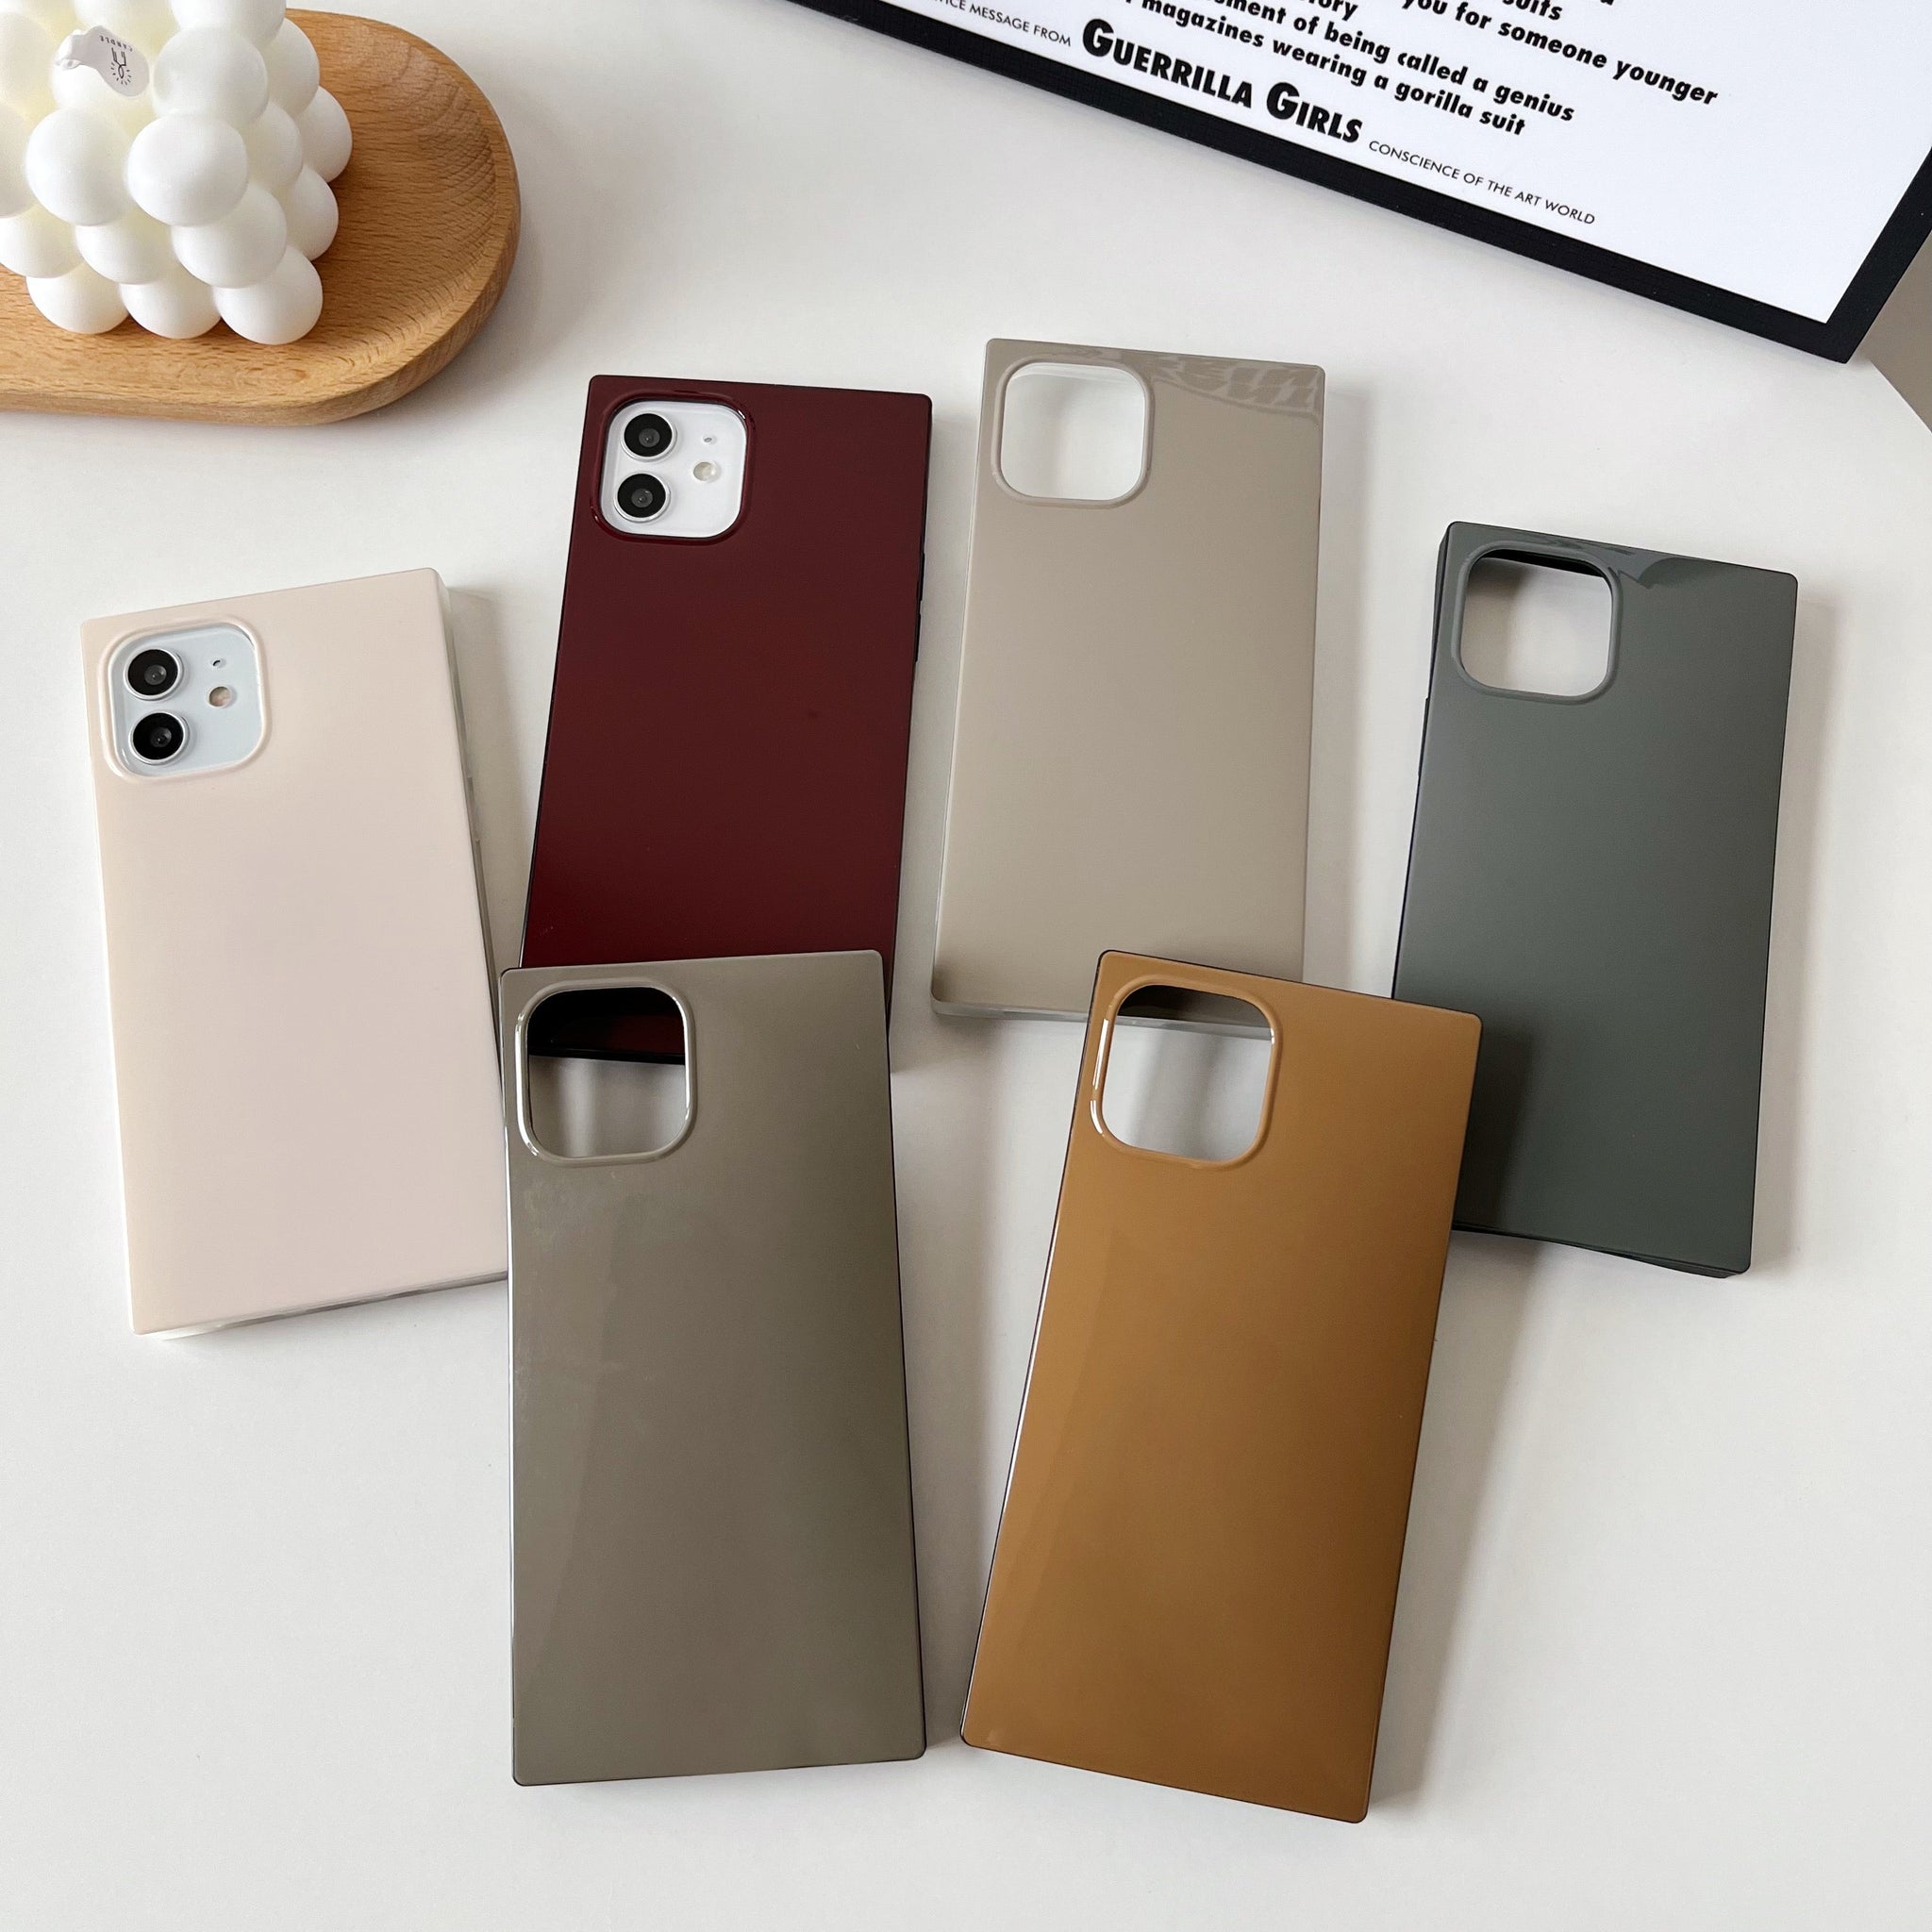 iPhone 12 Pro Max Case Square Neutral Plain Color (Golden Brown)